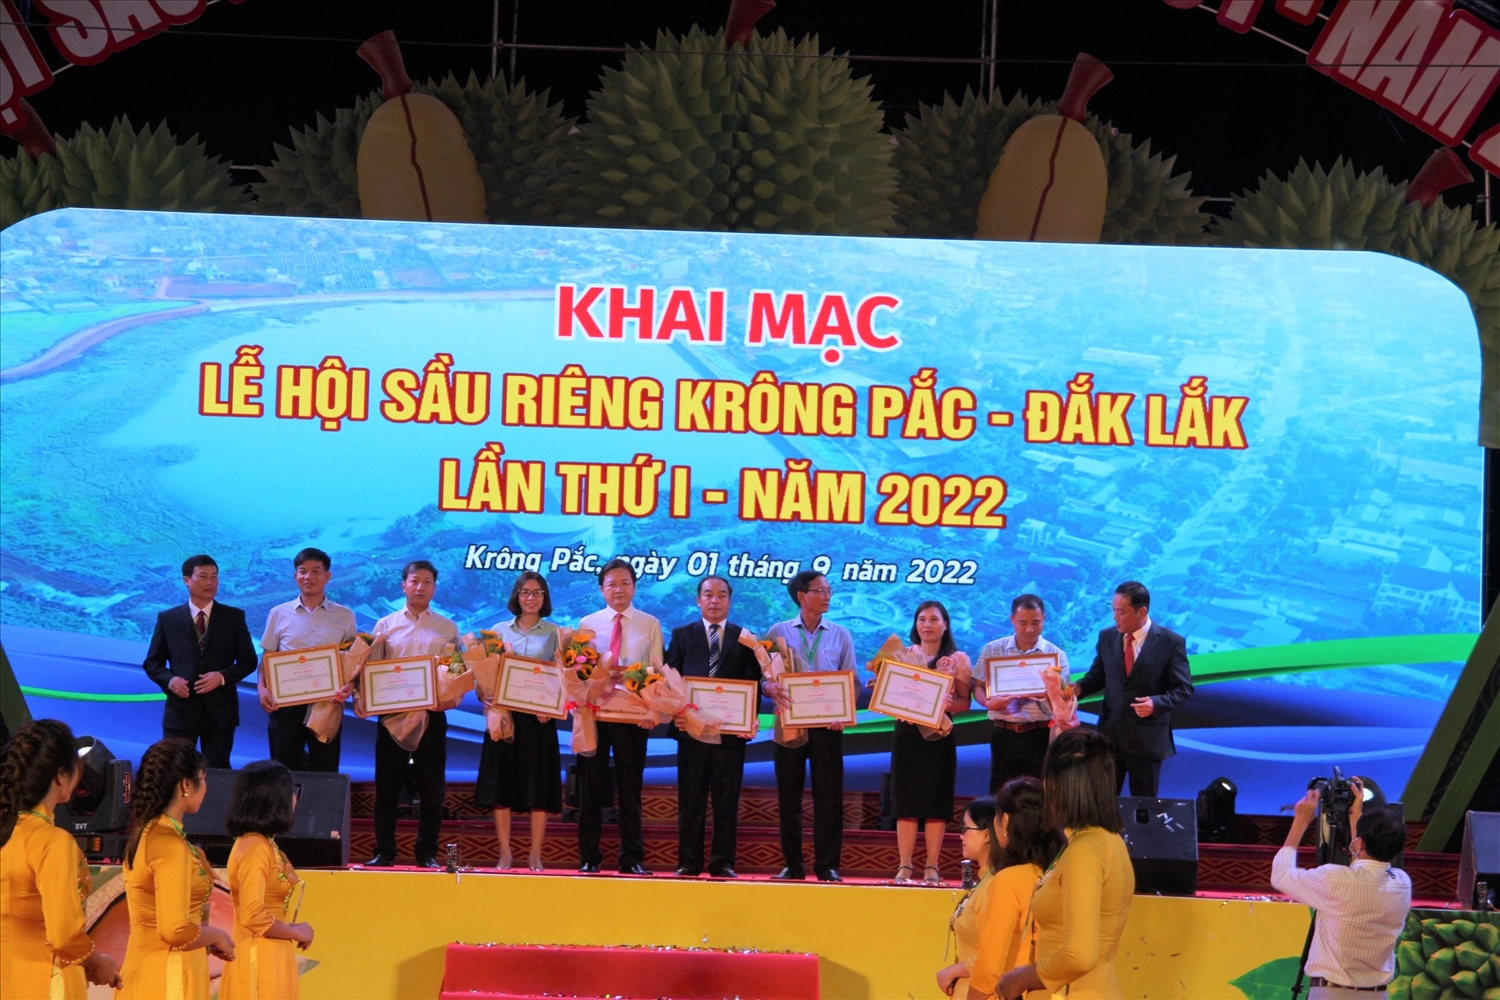 Trao Bằng khen của Chủ tịch UBND tỉnh cho các cá nhân có thành tích xuất sắc trong hỗ trợ phát triển sầu riêng huyện Krông Pắc.